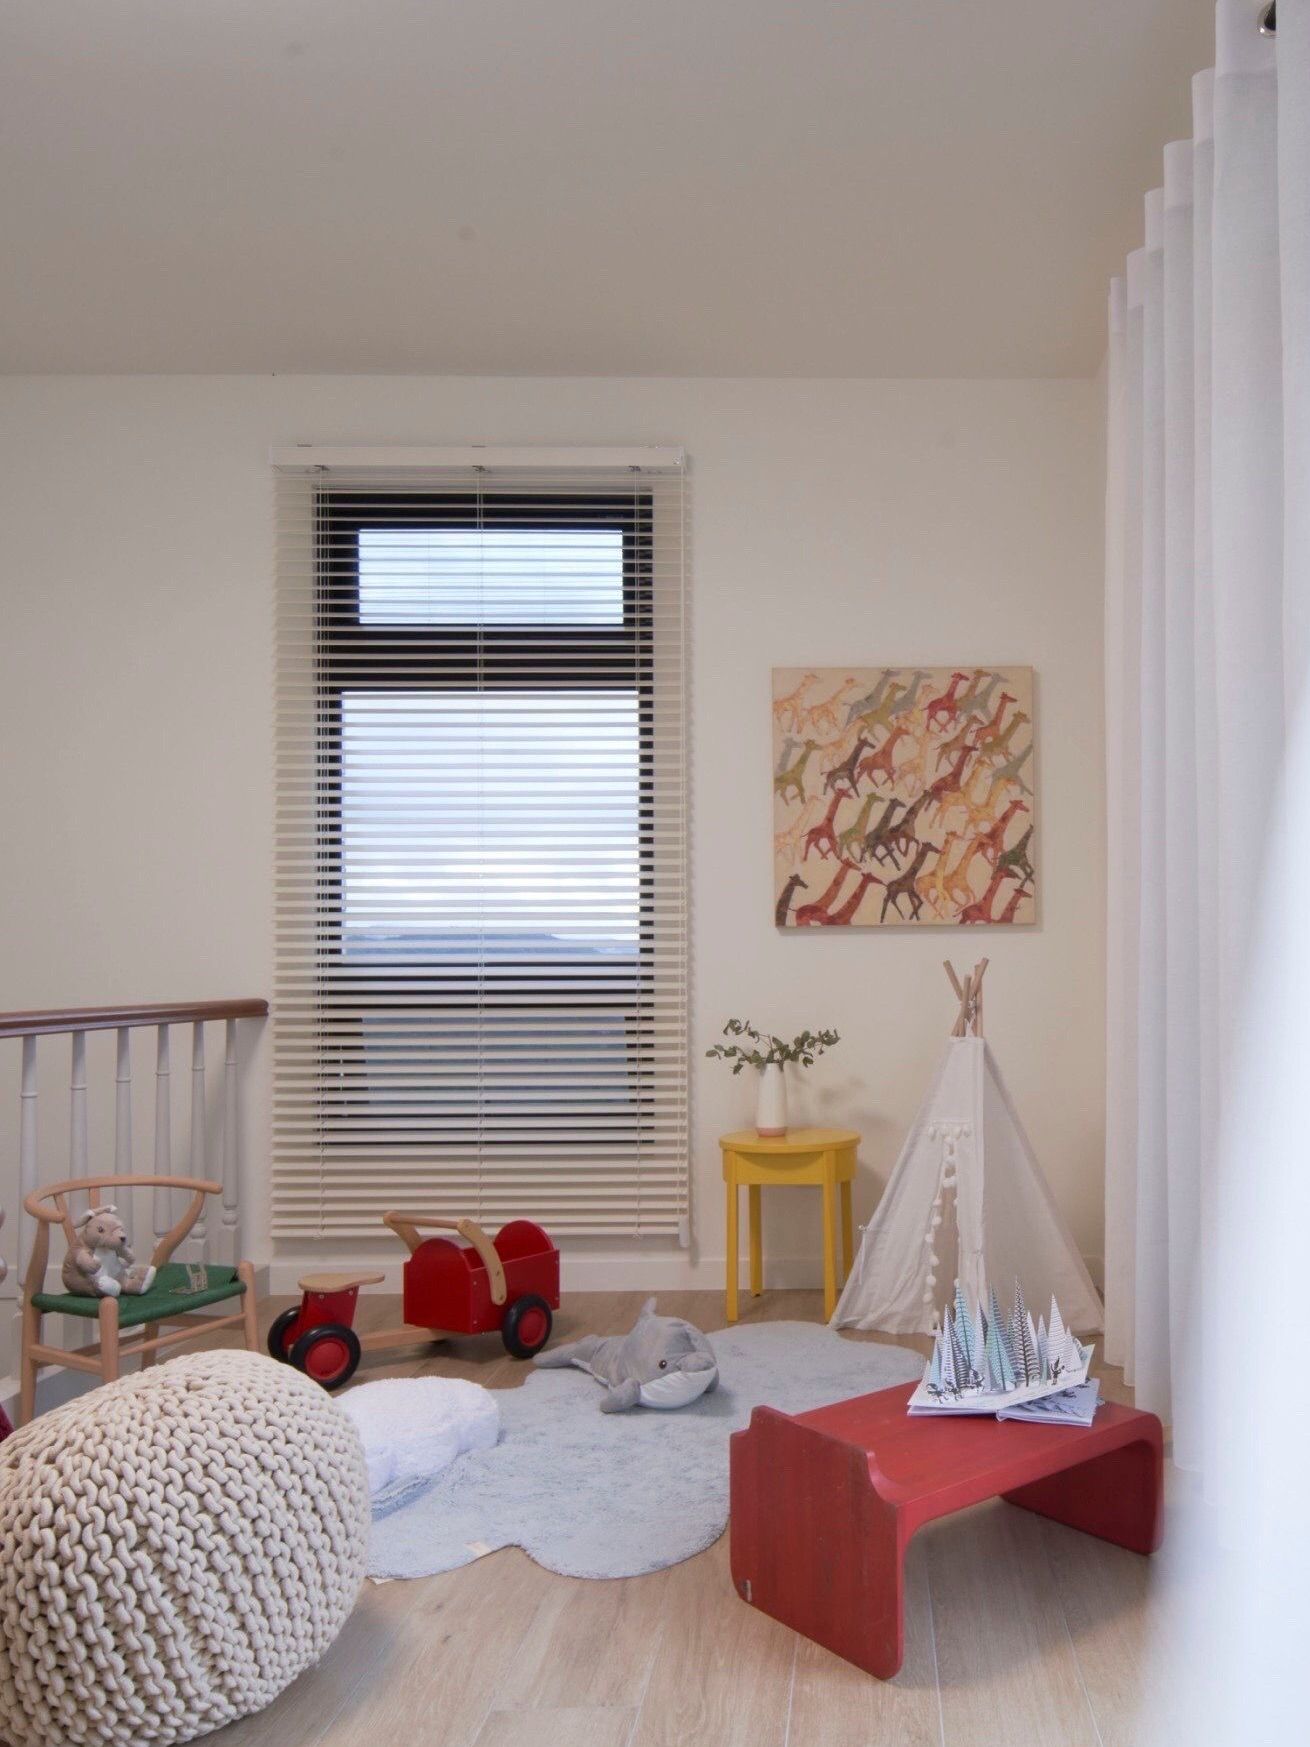 選擇窗簾是裝飾家居的關鍵步驟之一